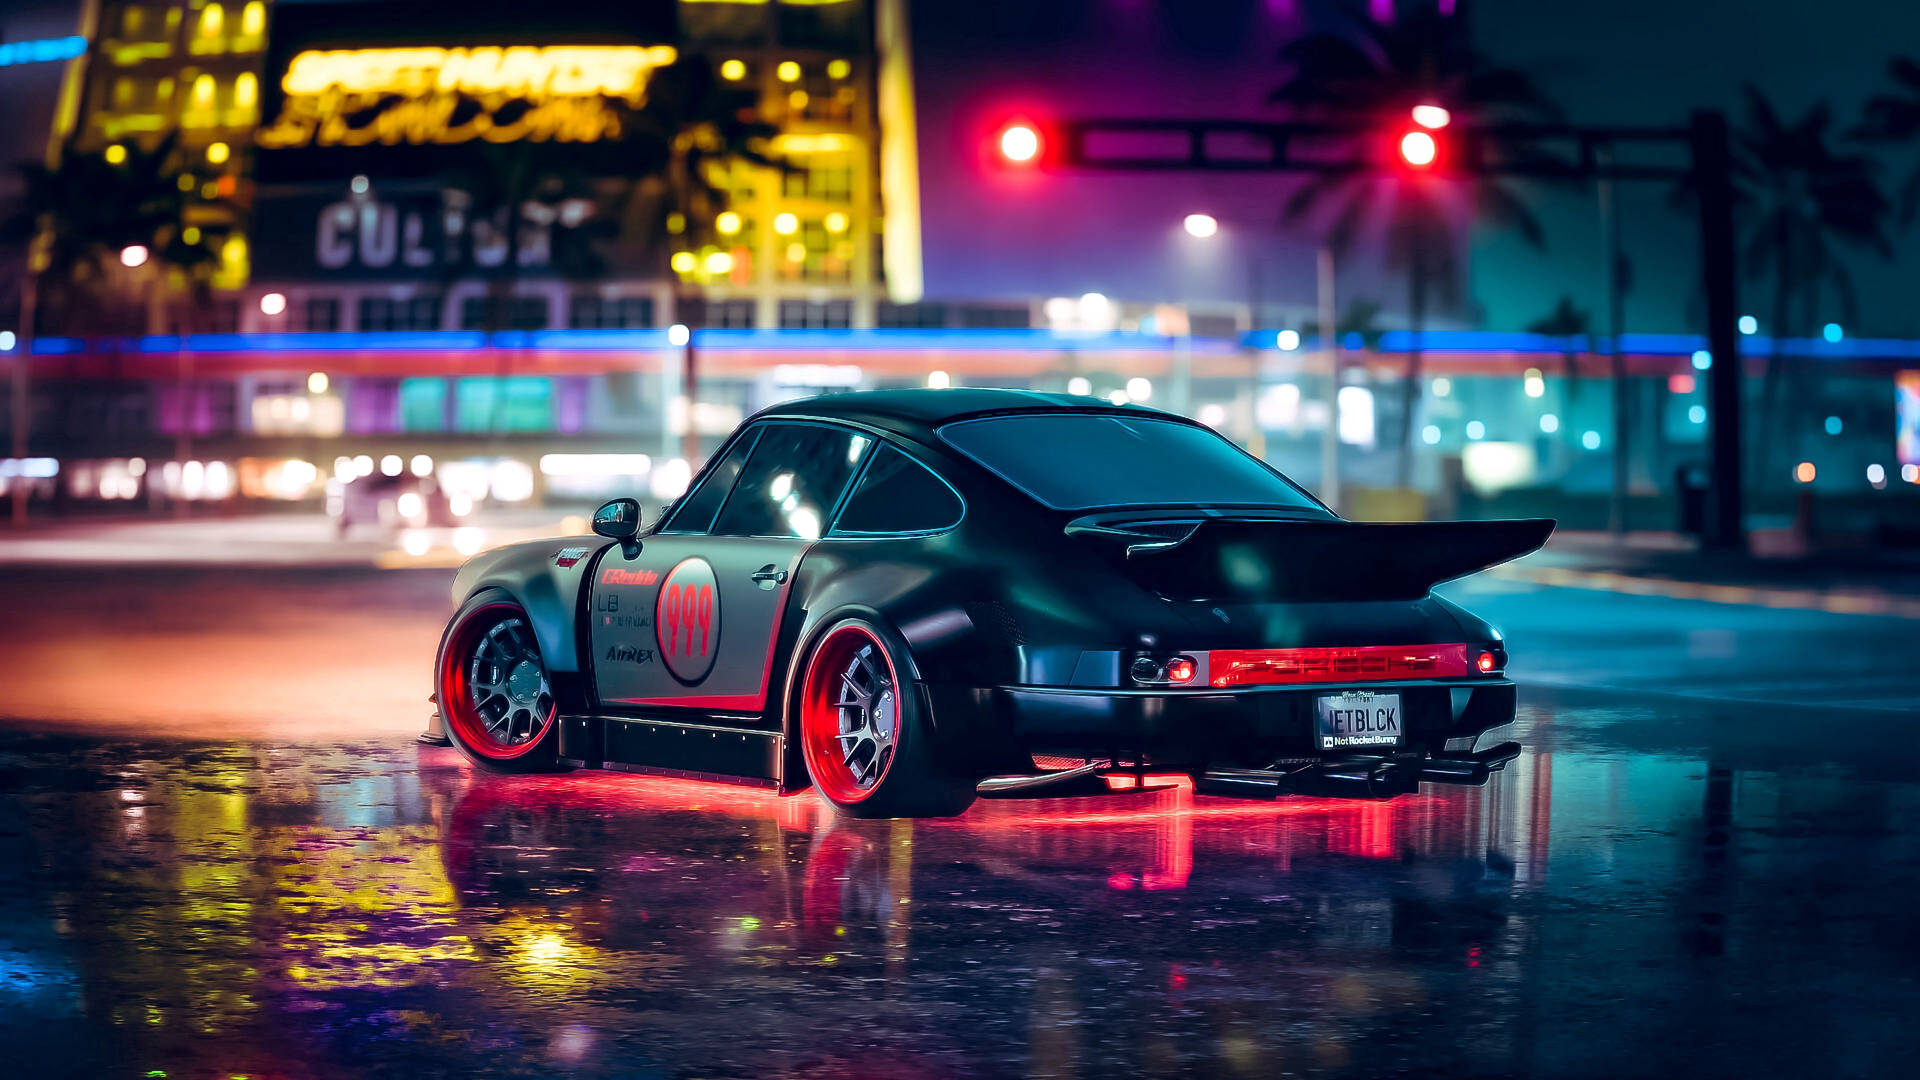 Porsche Neon Car Wallpaper